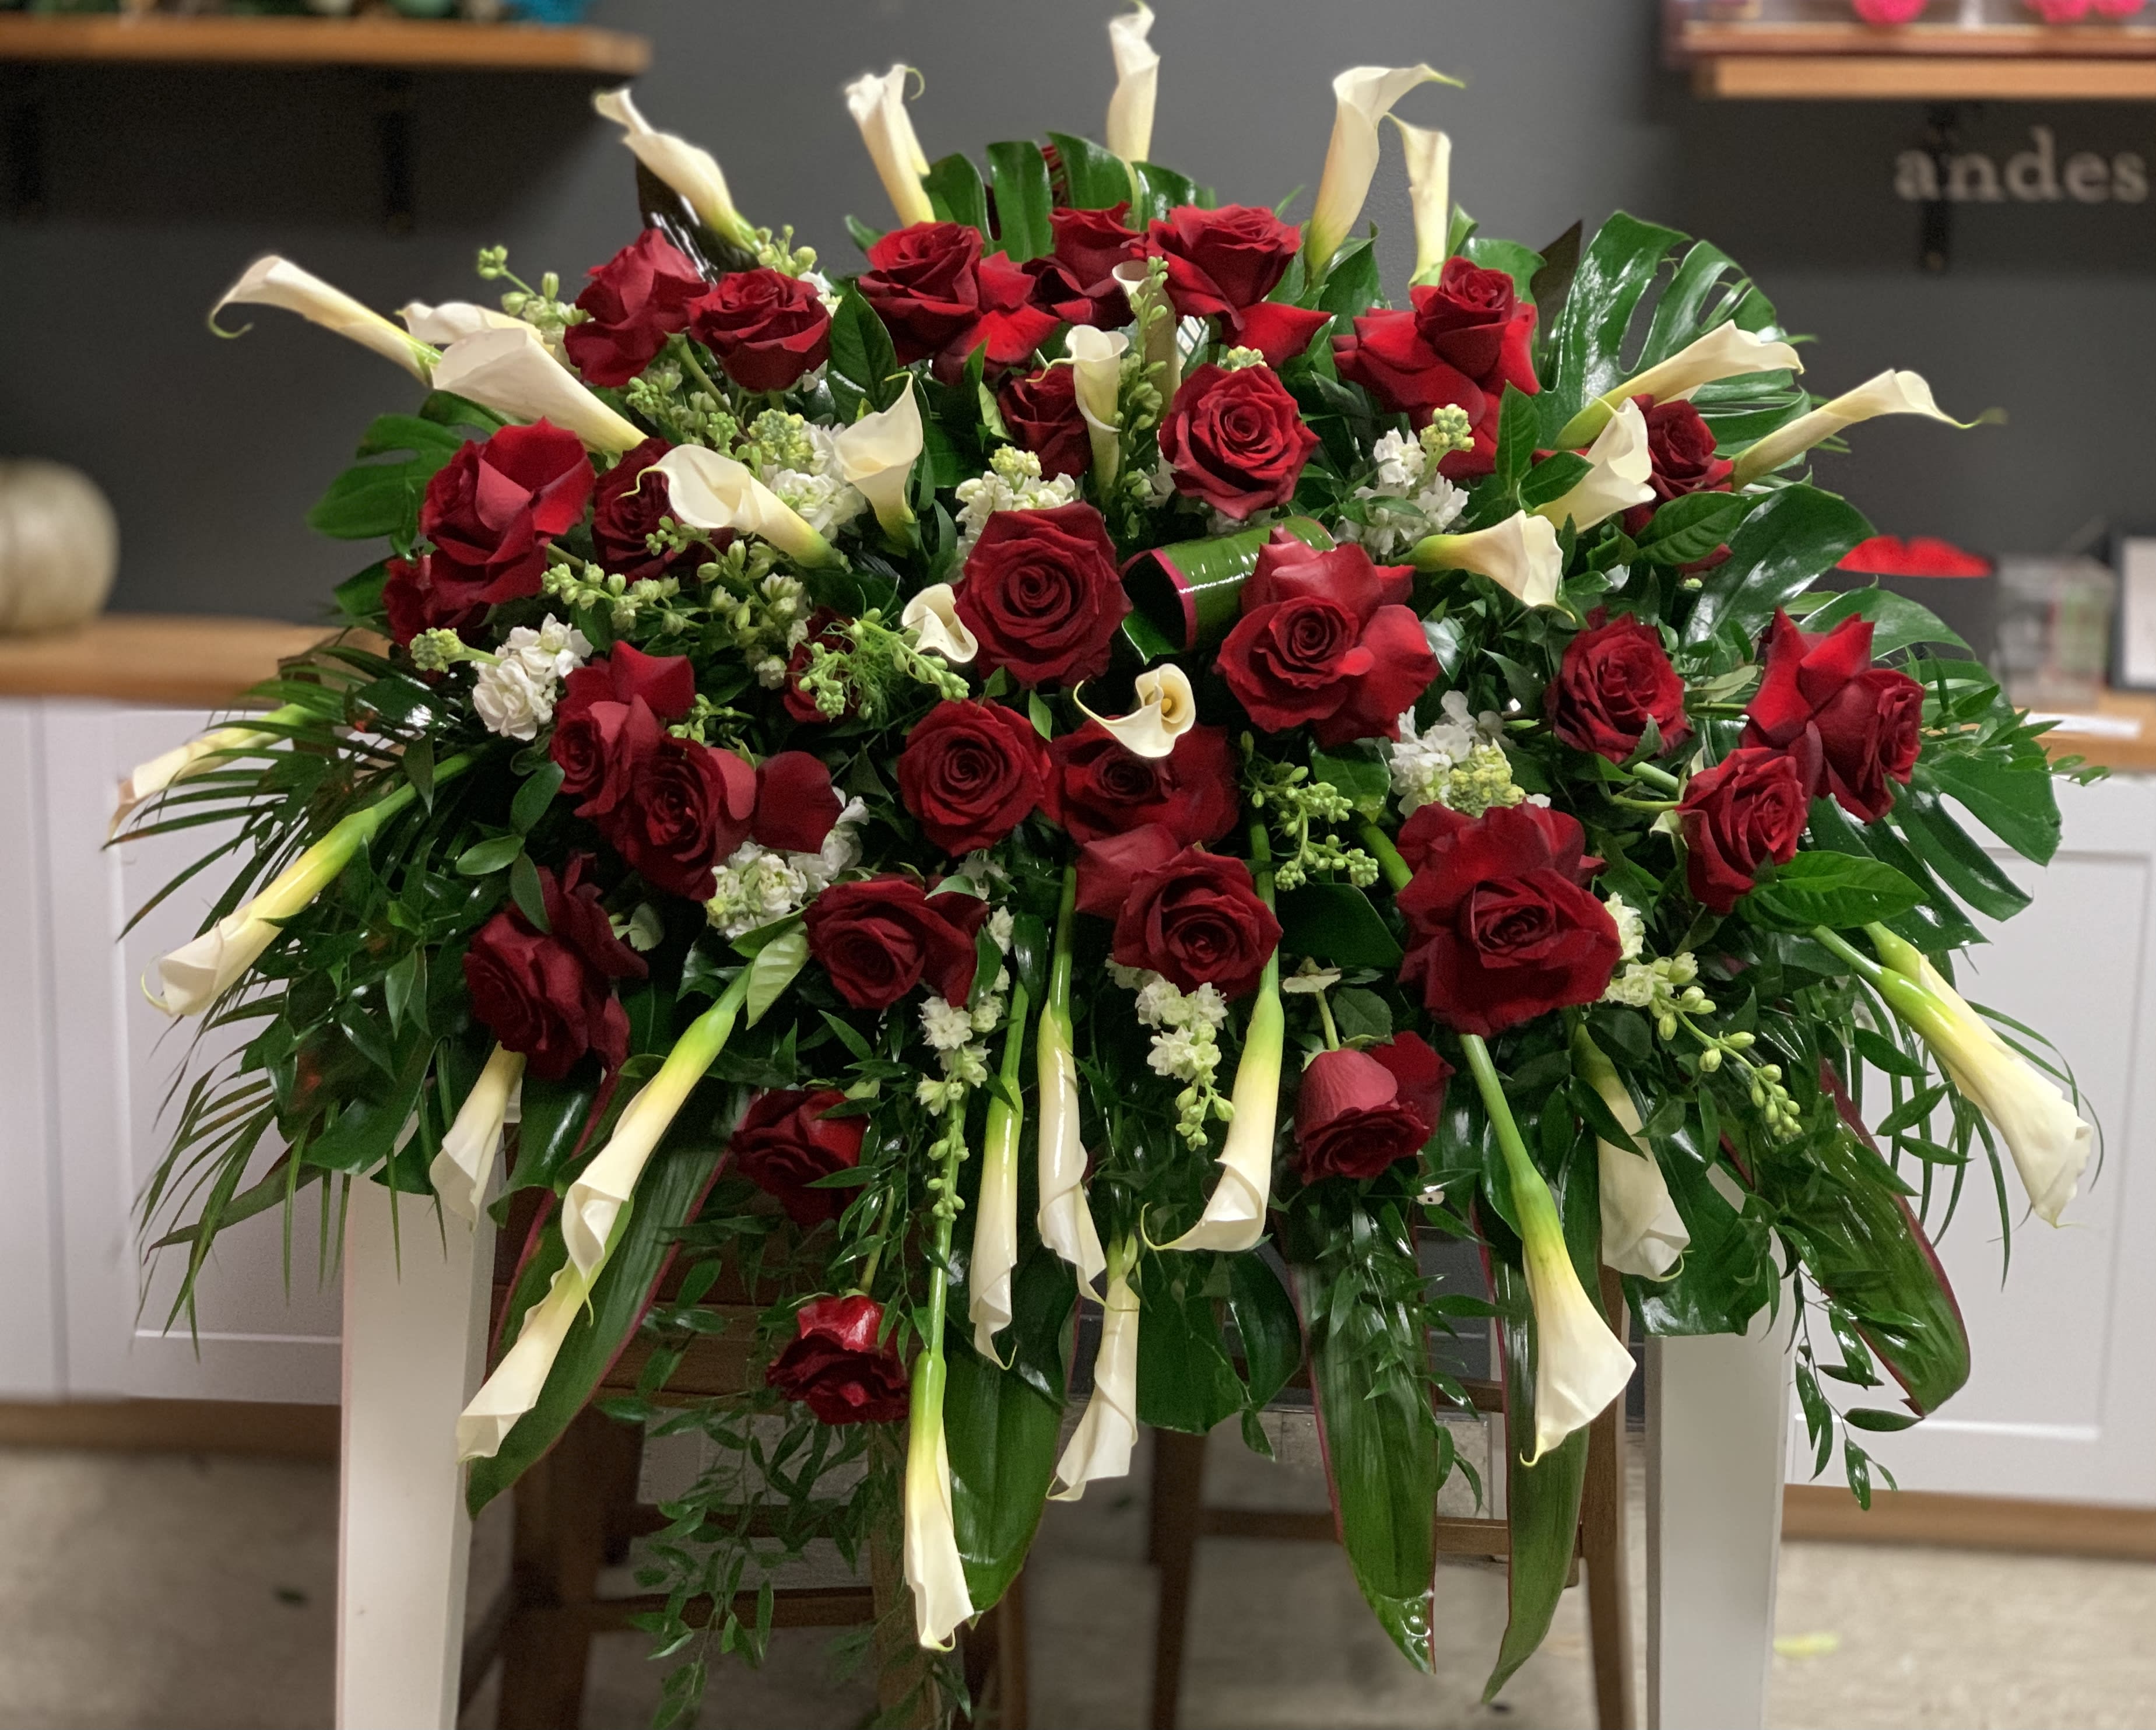 Rose Tribute Casket in Torrance, CA | Andes Florist